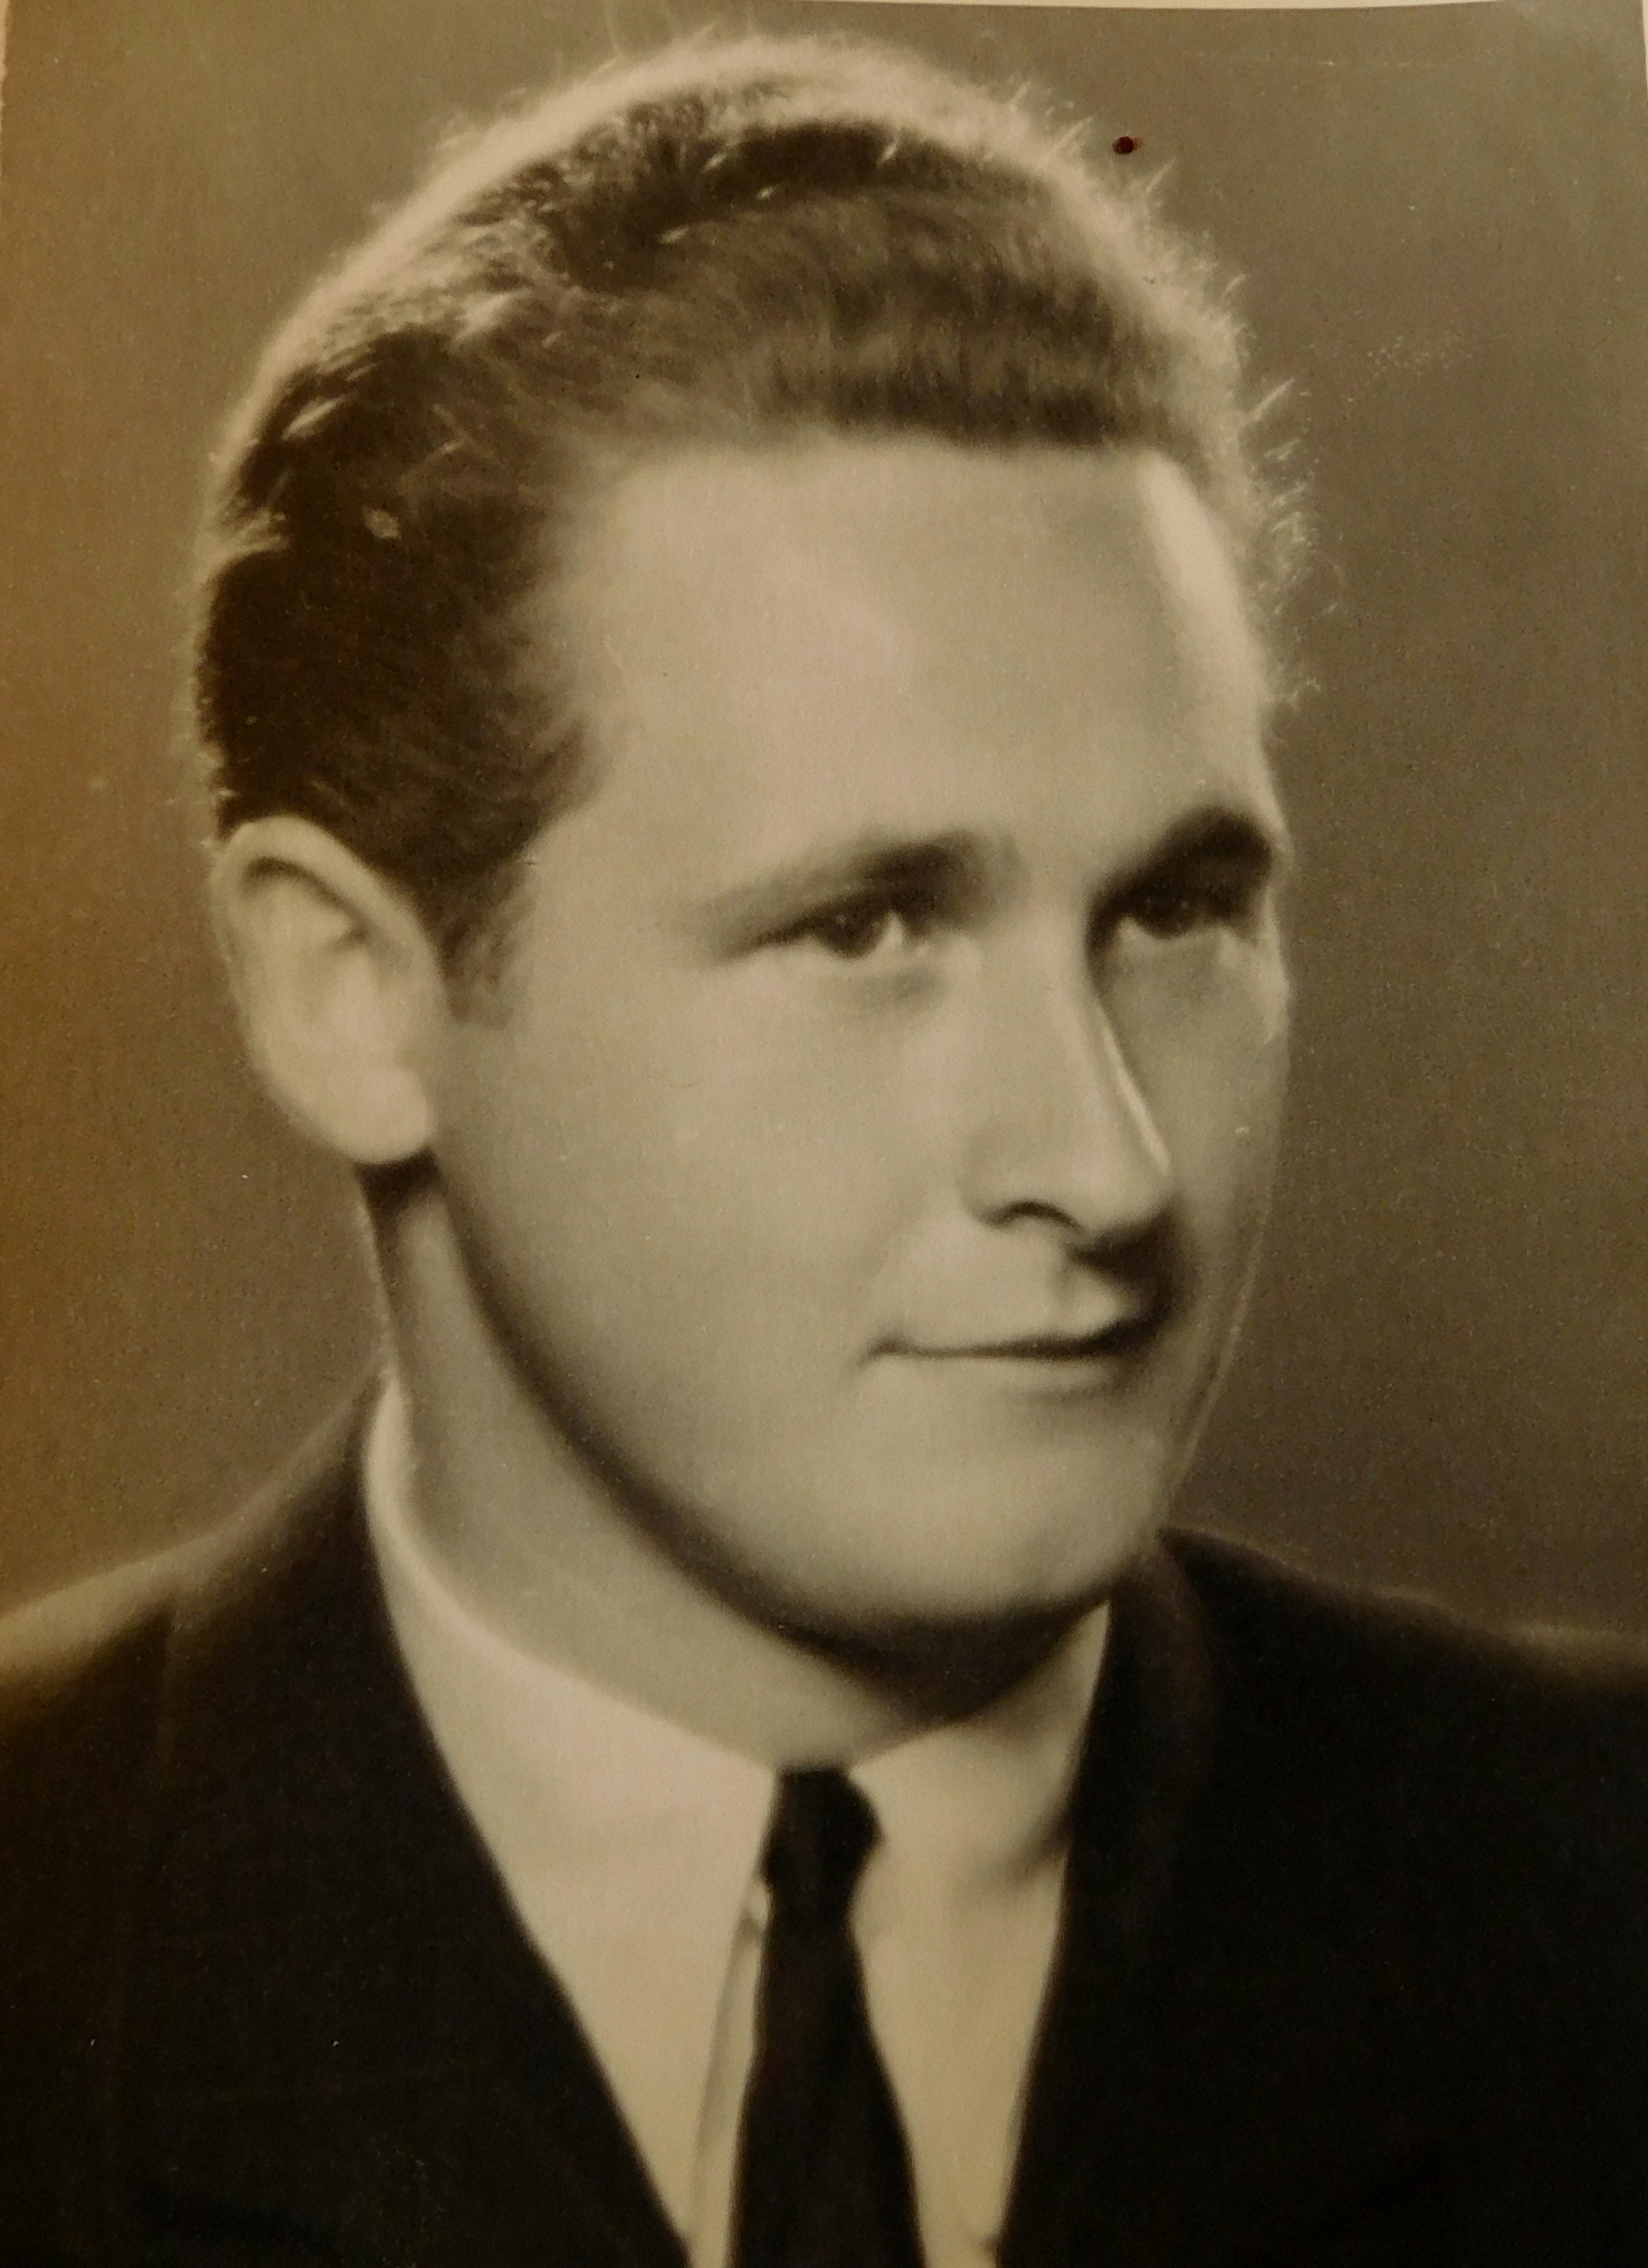 Jan Škoda na maturitní fotografii z roku 1947